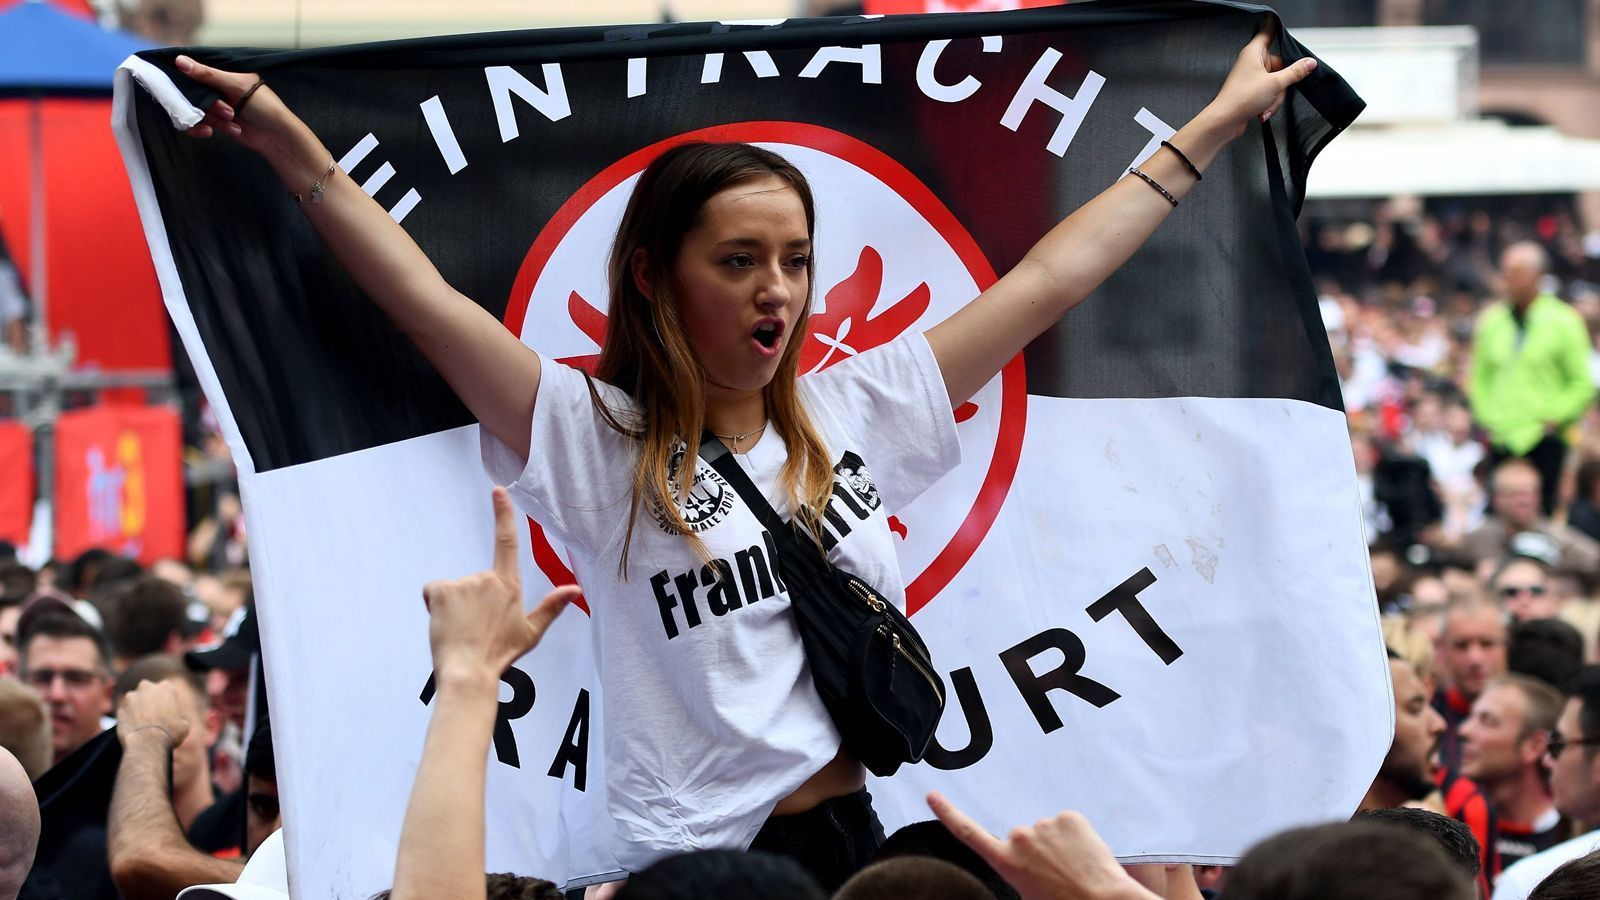 
                <strong>Empfang der Eintracht-Pokalhelden am Frankfurter Römer</strong><br>
                Laut Medienberichten kamen am Sonntagnachmittag rund 15.000 Eintracht-Fans, um mit ihren Helden den Pokal-Coup zu feiern.
              